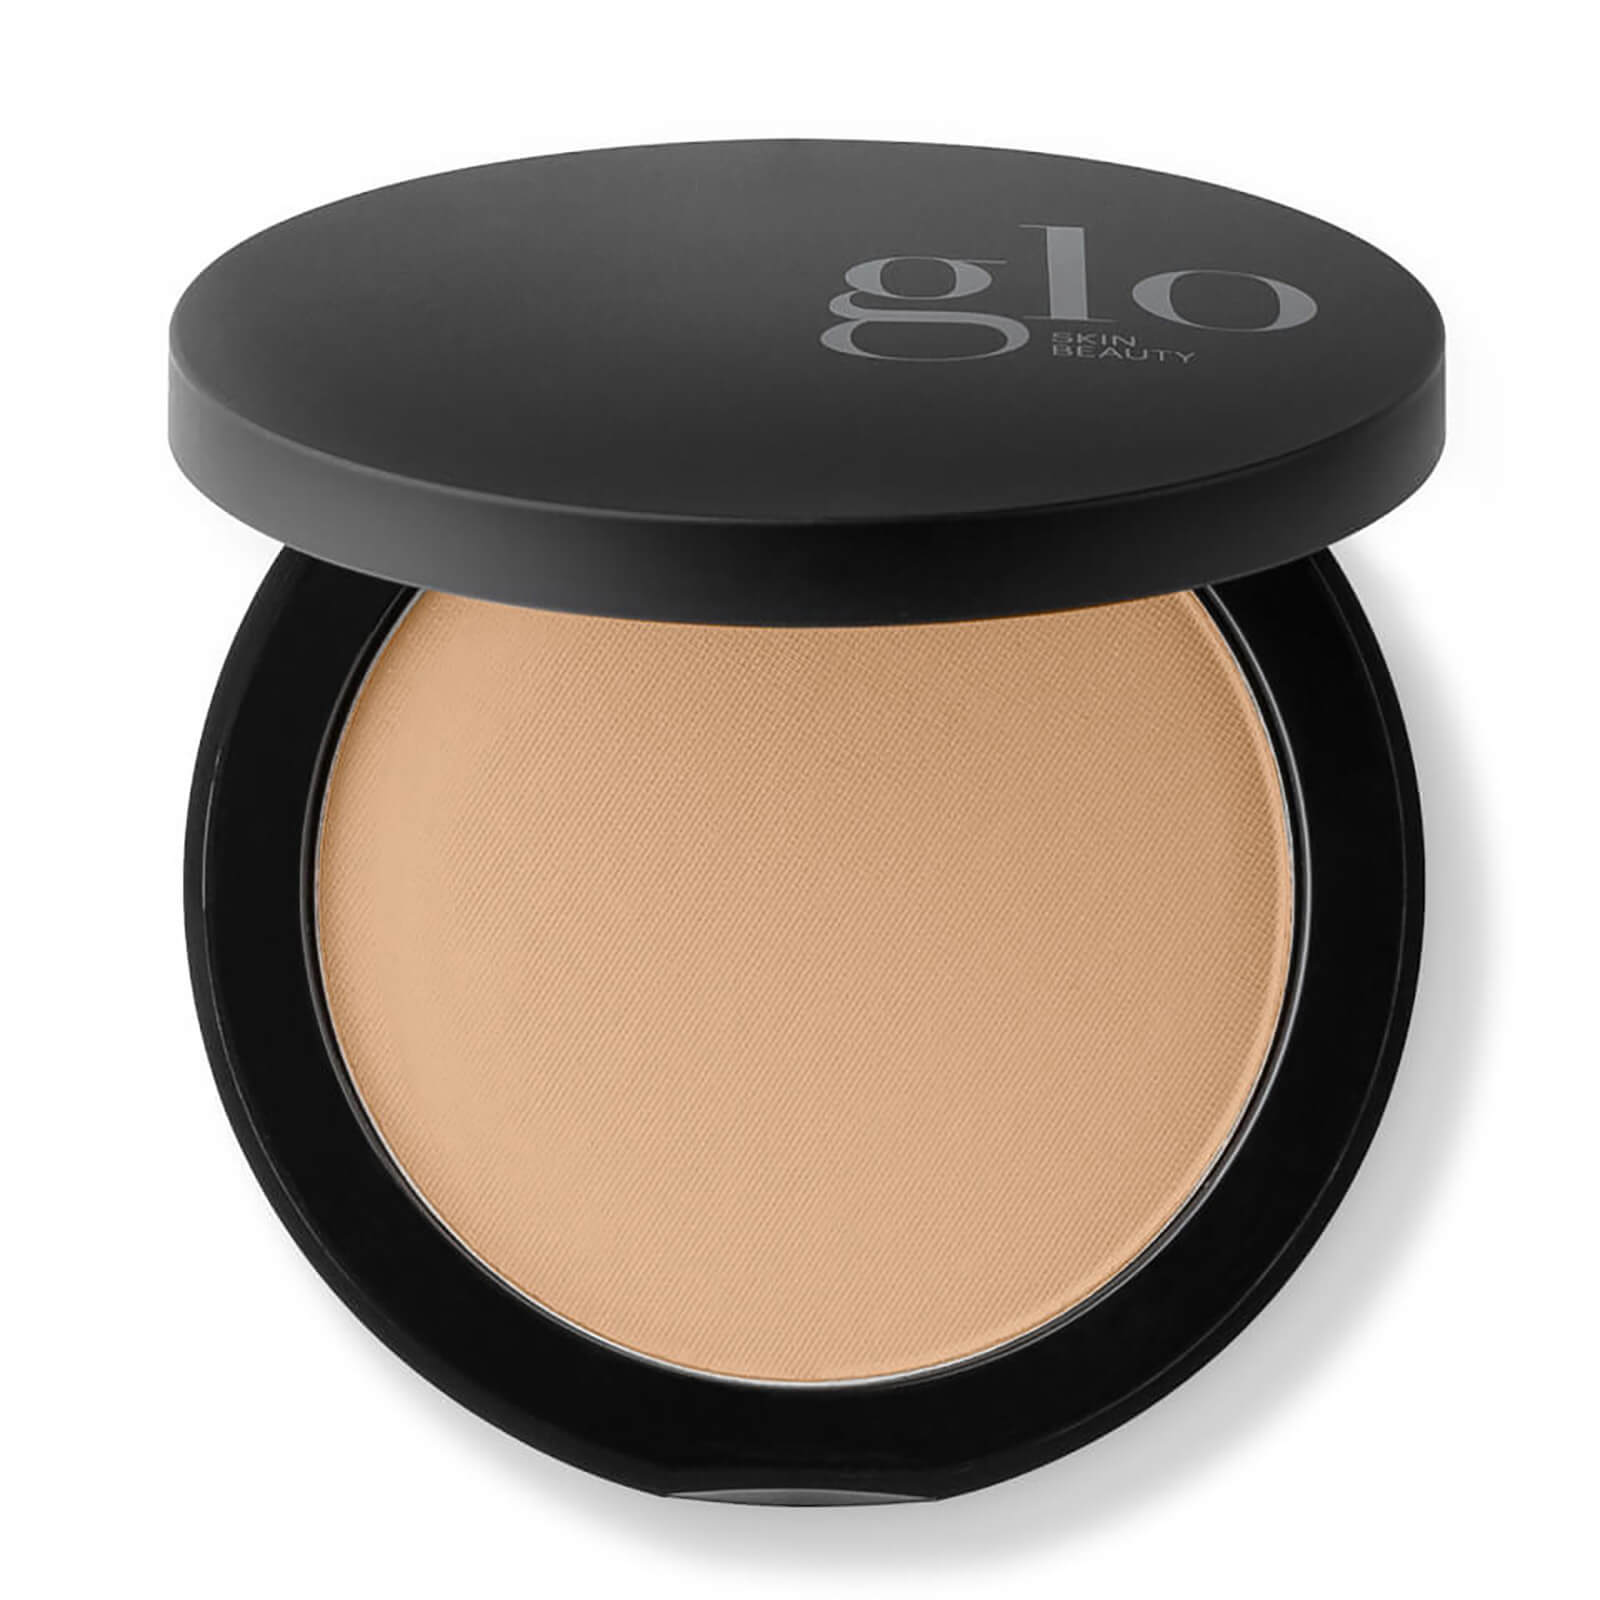 Glo Skin Beauty Pressed Base Powder Foundation (0.35 Oz.) In Honey Medium